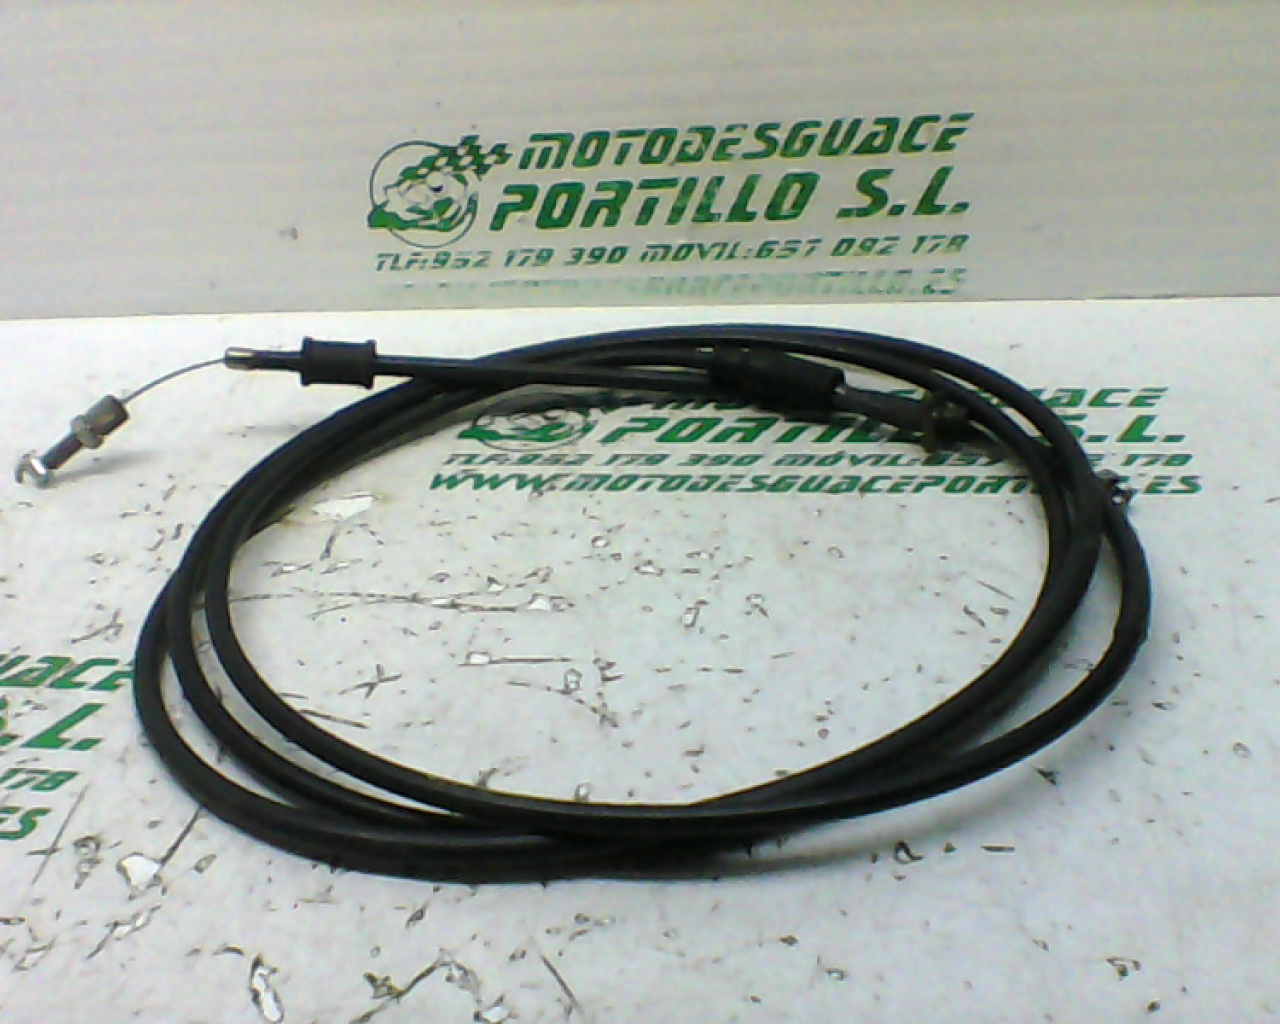 Cable acelerador Piaggio X9 125 (2002-2007)